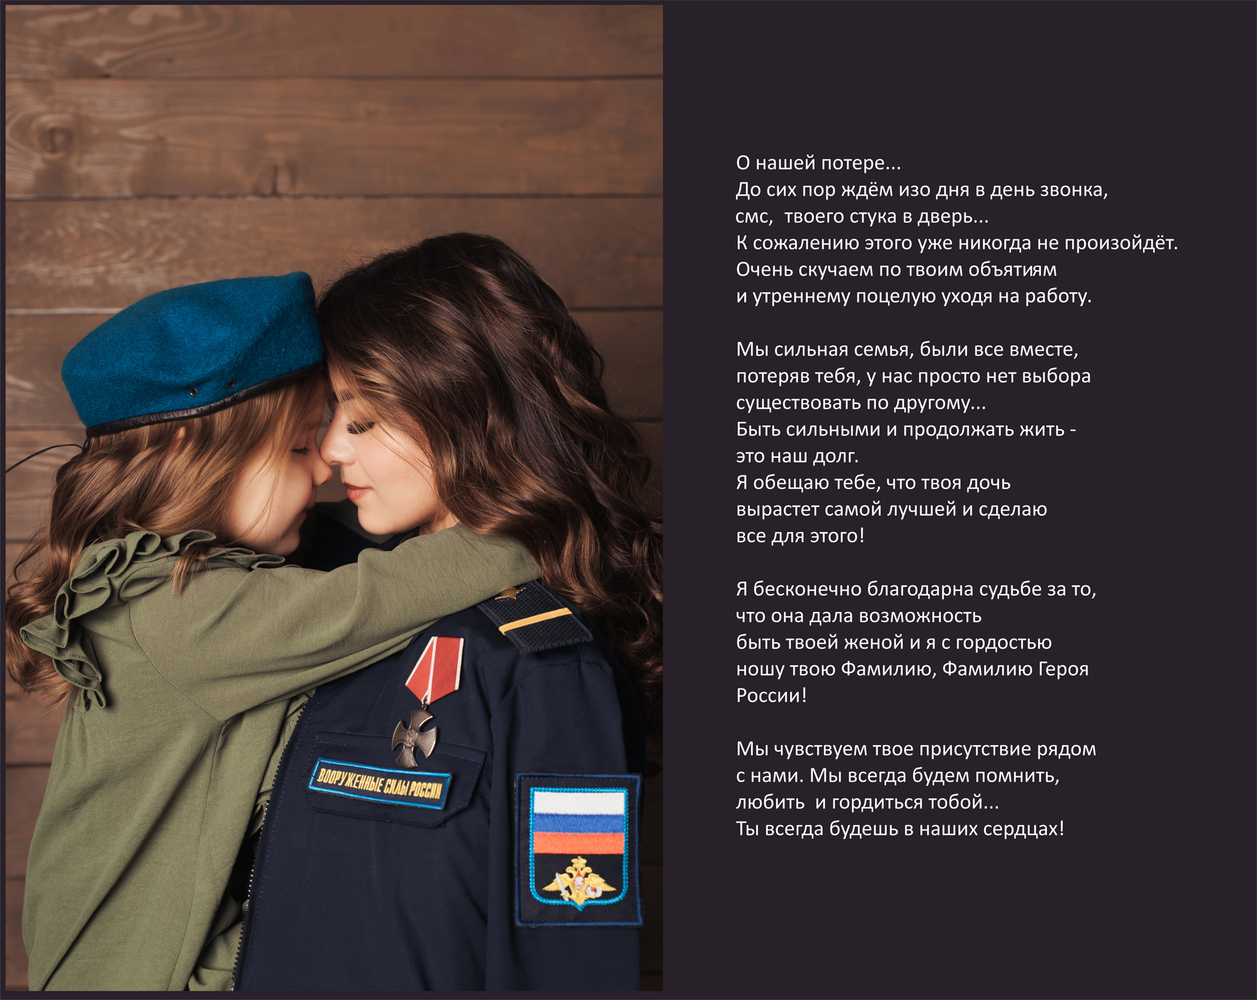 Открытие выставки патриотического фотопроекта «ЖЕНА ГЕРОЯ» состоялось 4 августа в Музейно-выставочном центре города Иваново